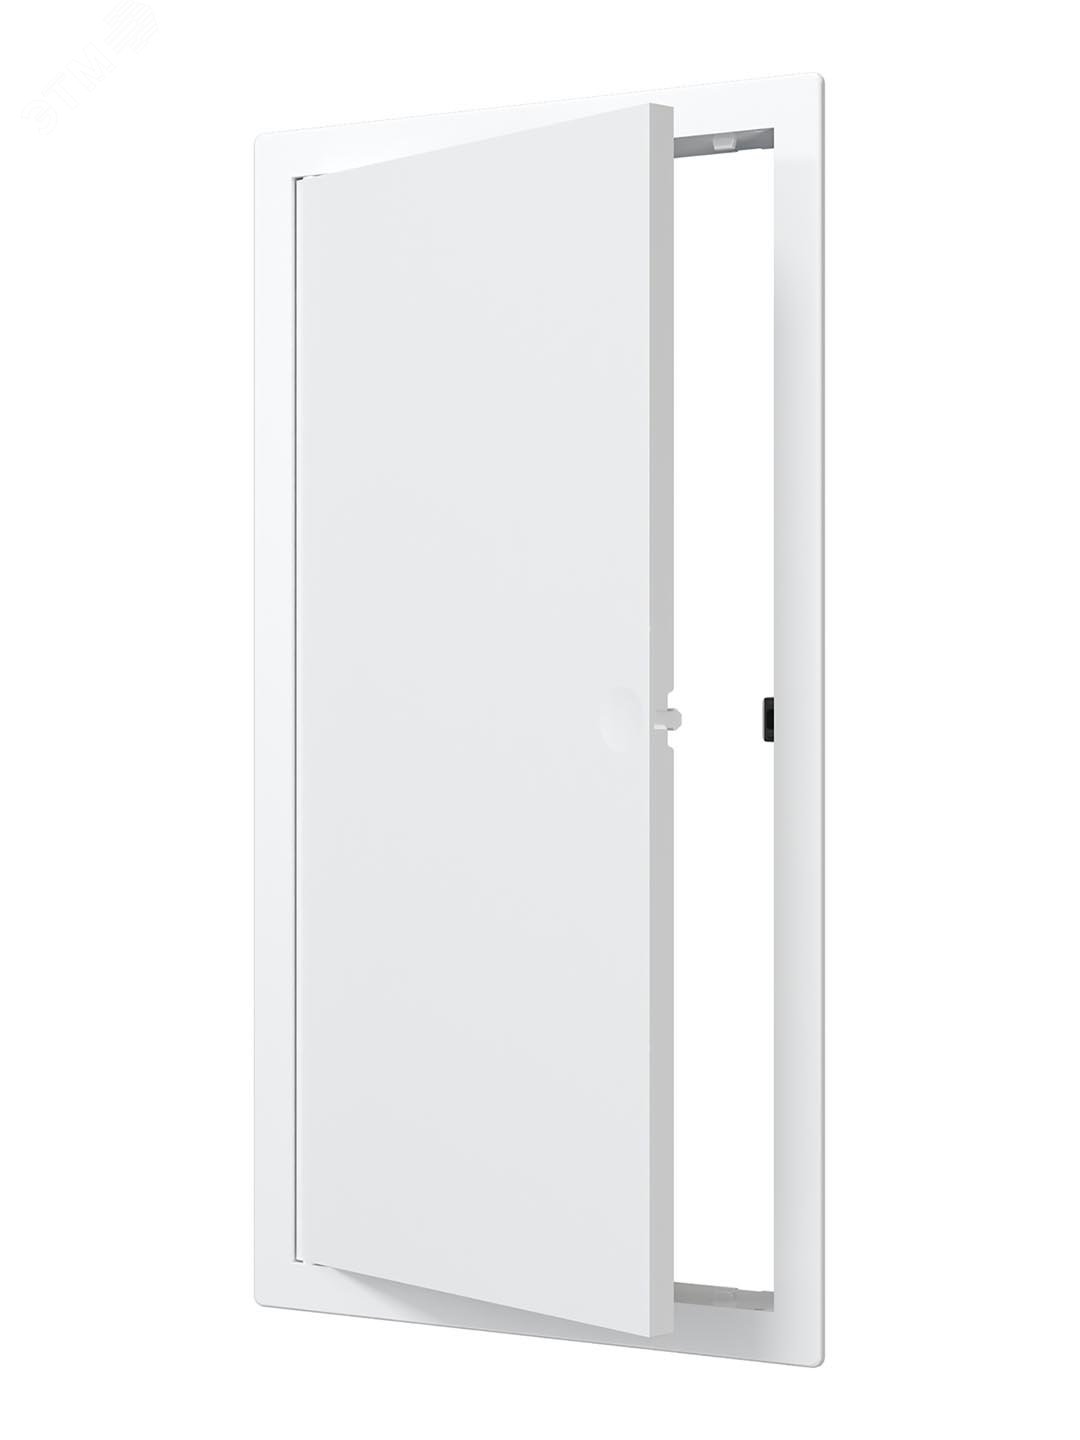 Люк-дверца ревизионный пластиковый нажимной 172х322 с фланцем 150х300 L1530N EVECS - превью 2